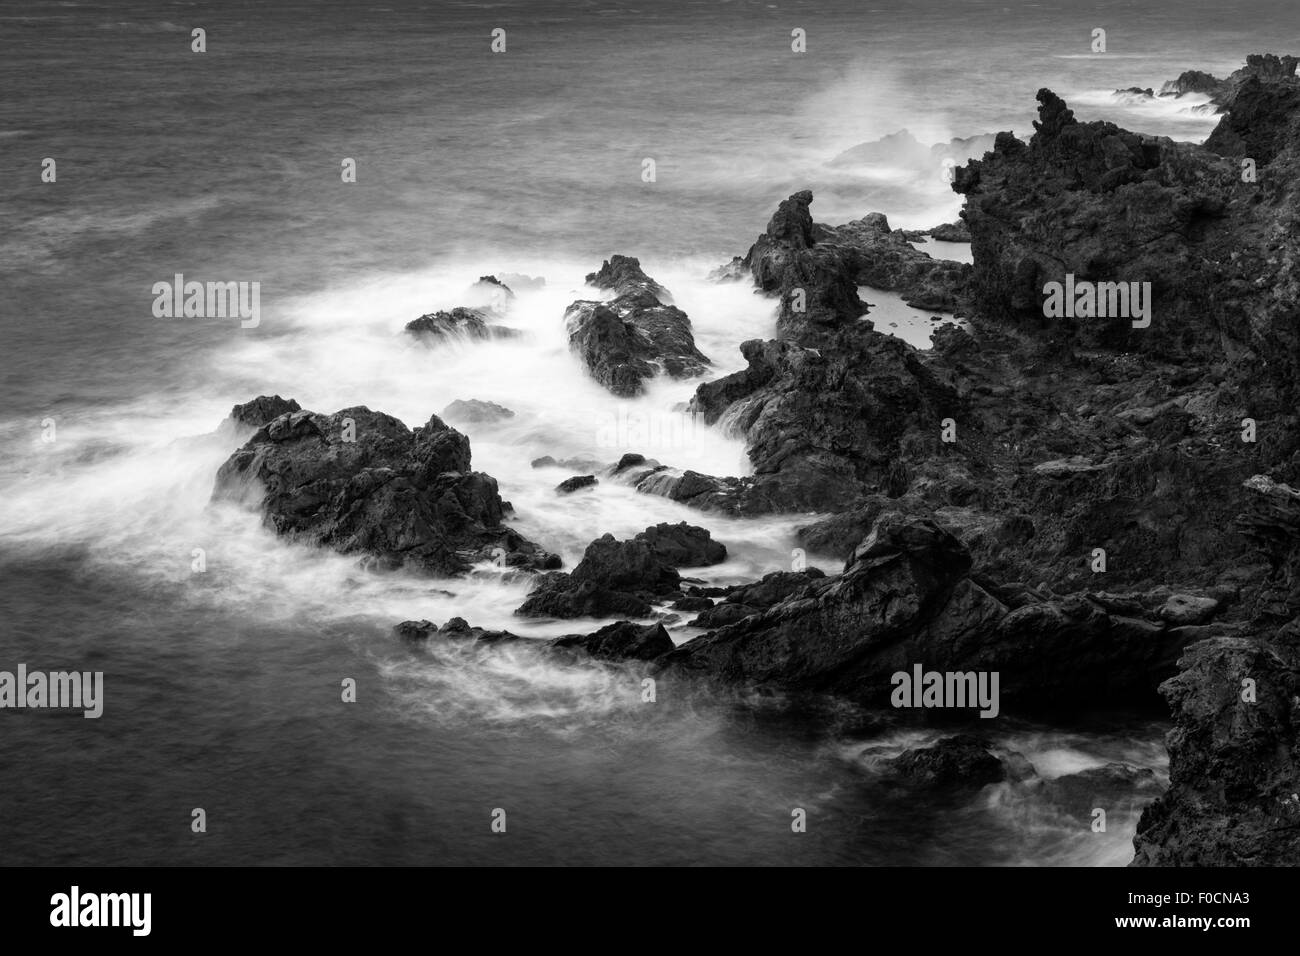 Lange Exposition Blick auf den Atlantischen Ozean auf die schroffe Felsküste von Teneriffa, Kanarische Inseln, Spanien. Farbe F0CNA6 Stockfoto